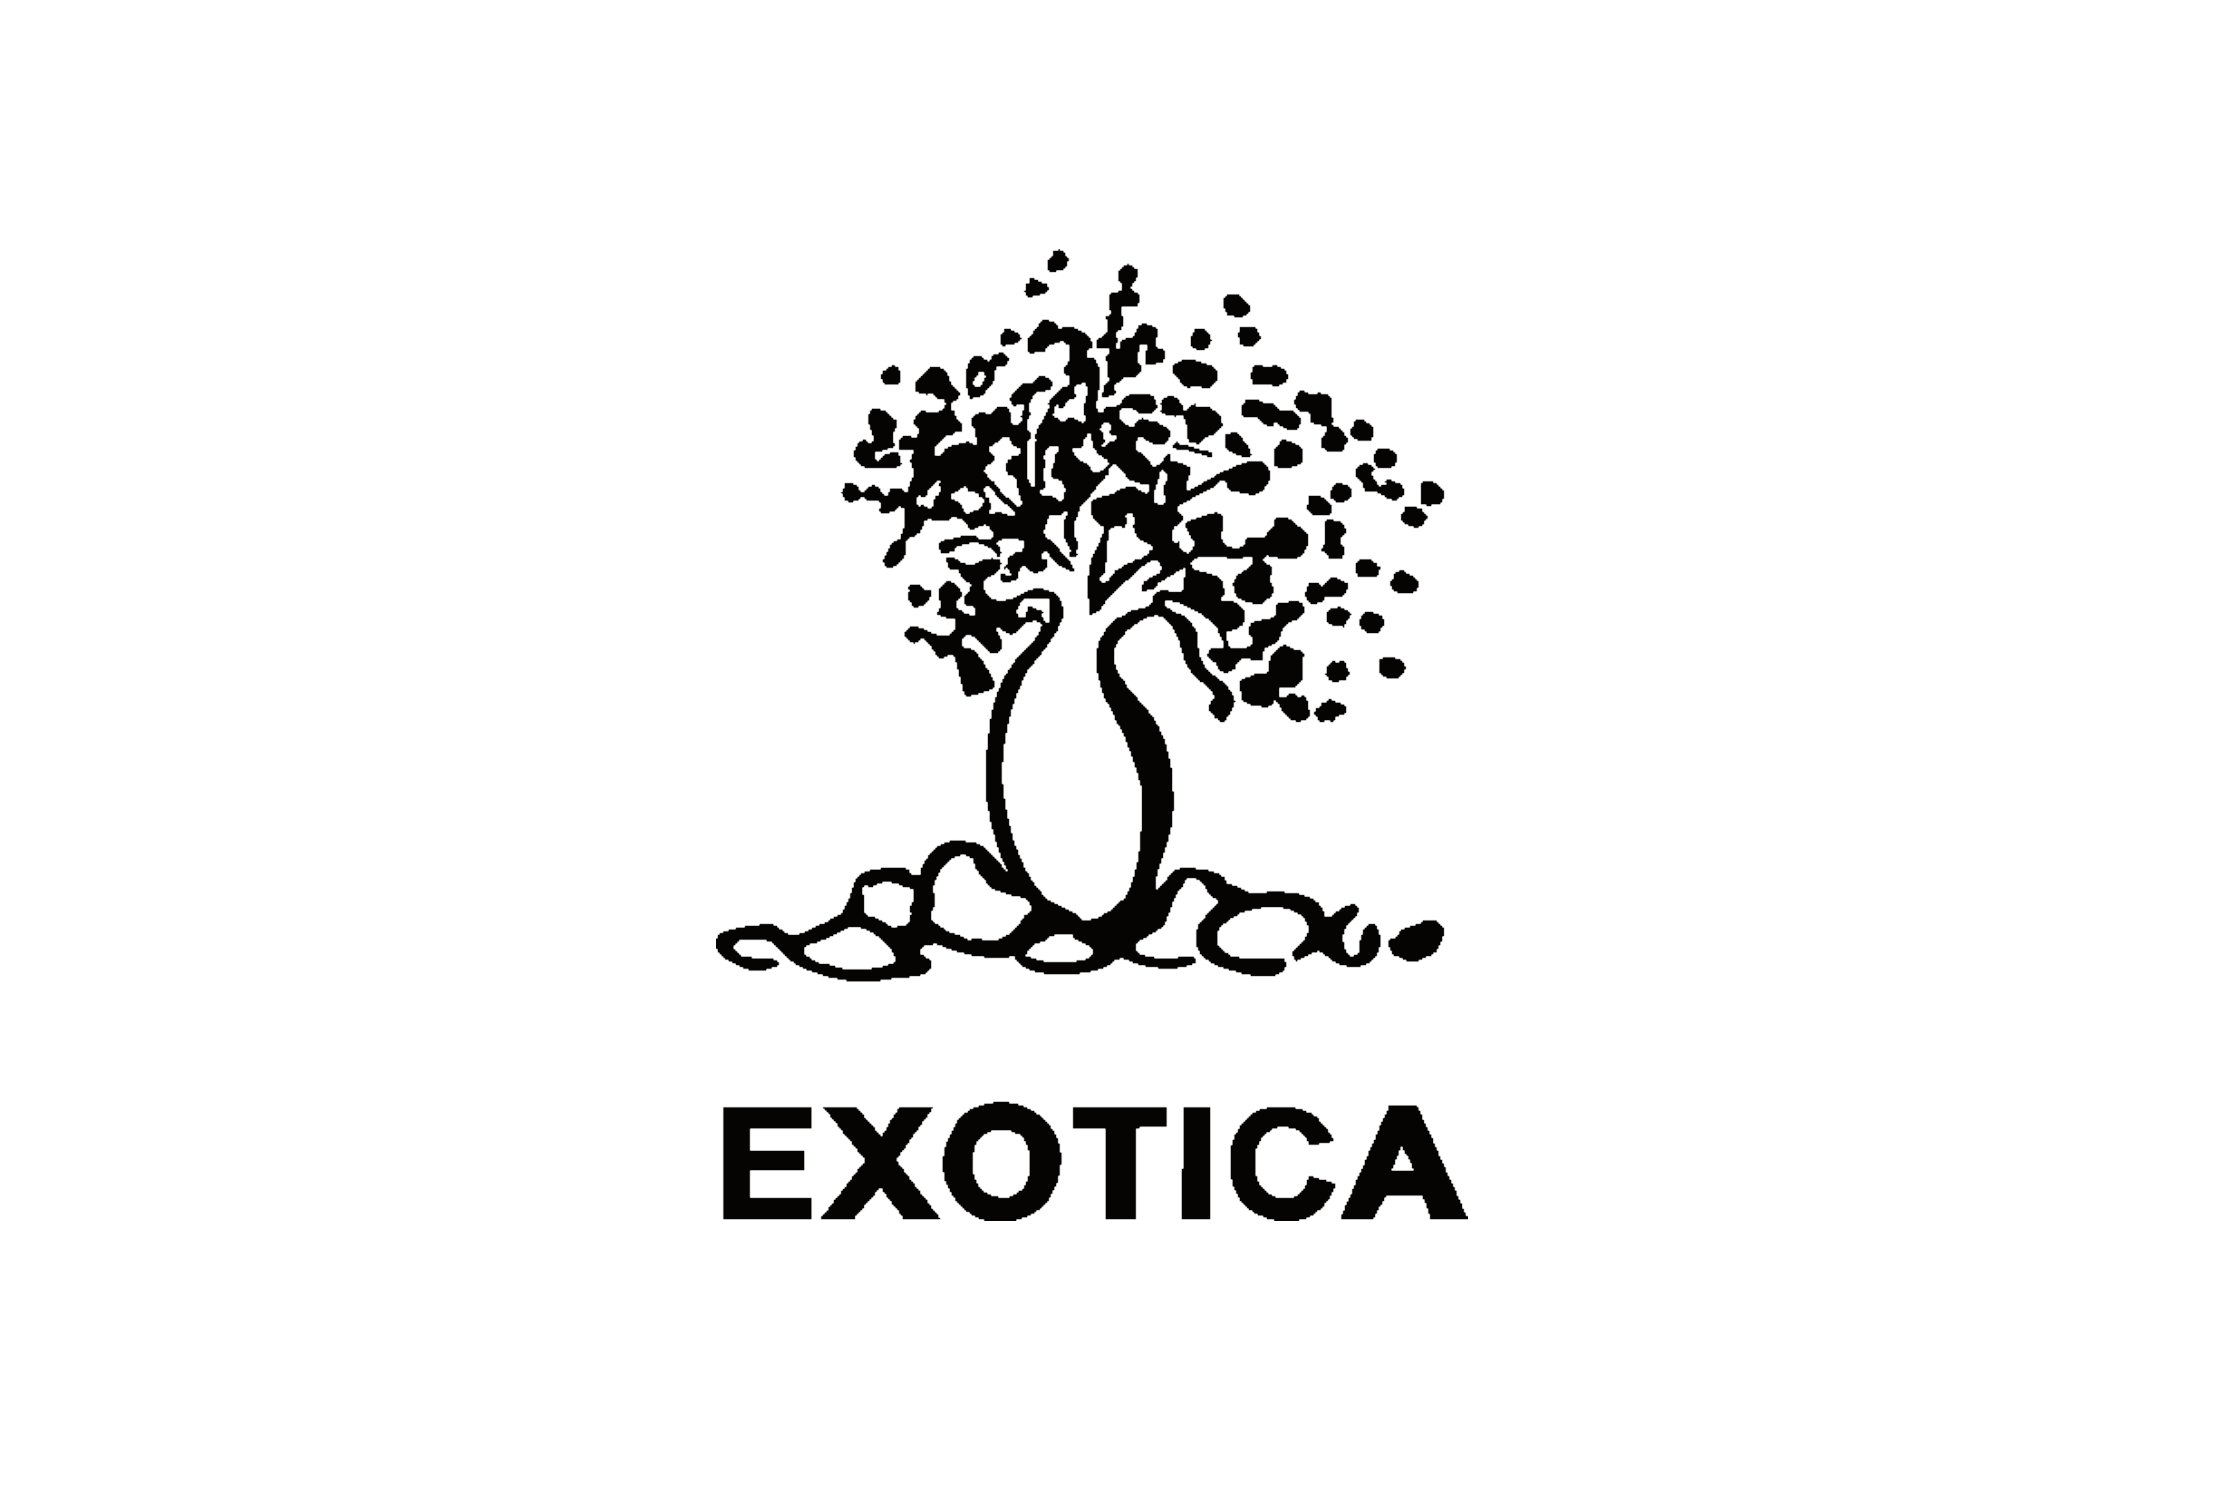 (c) Specks-exotica.com